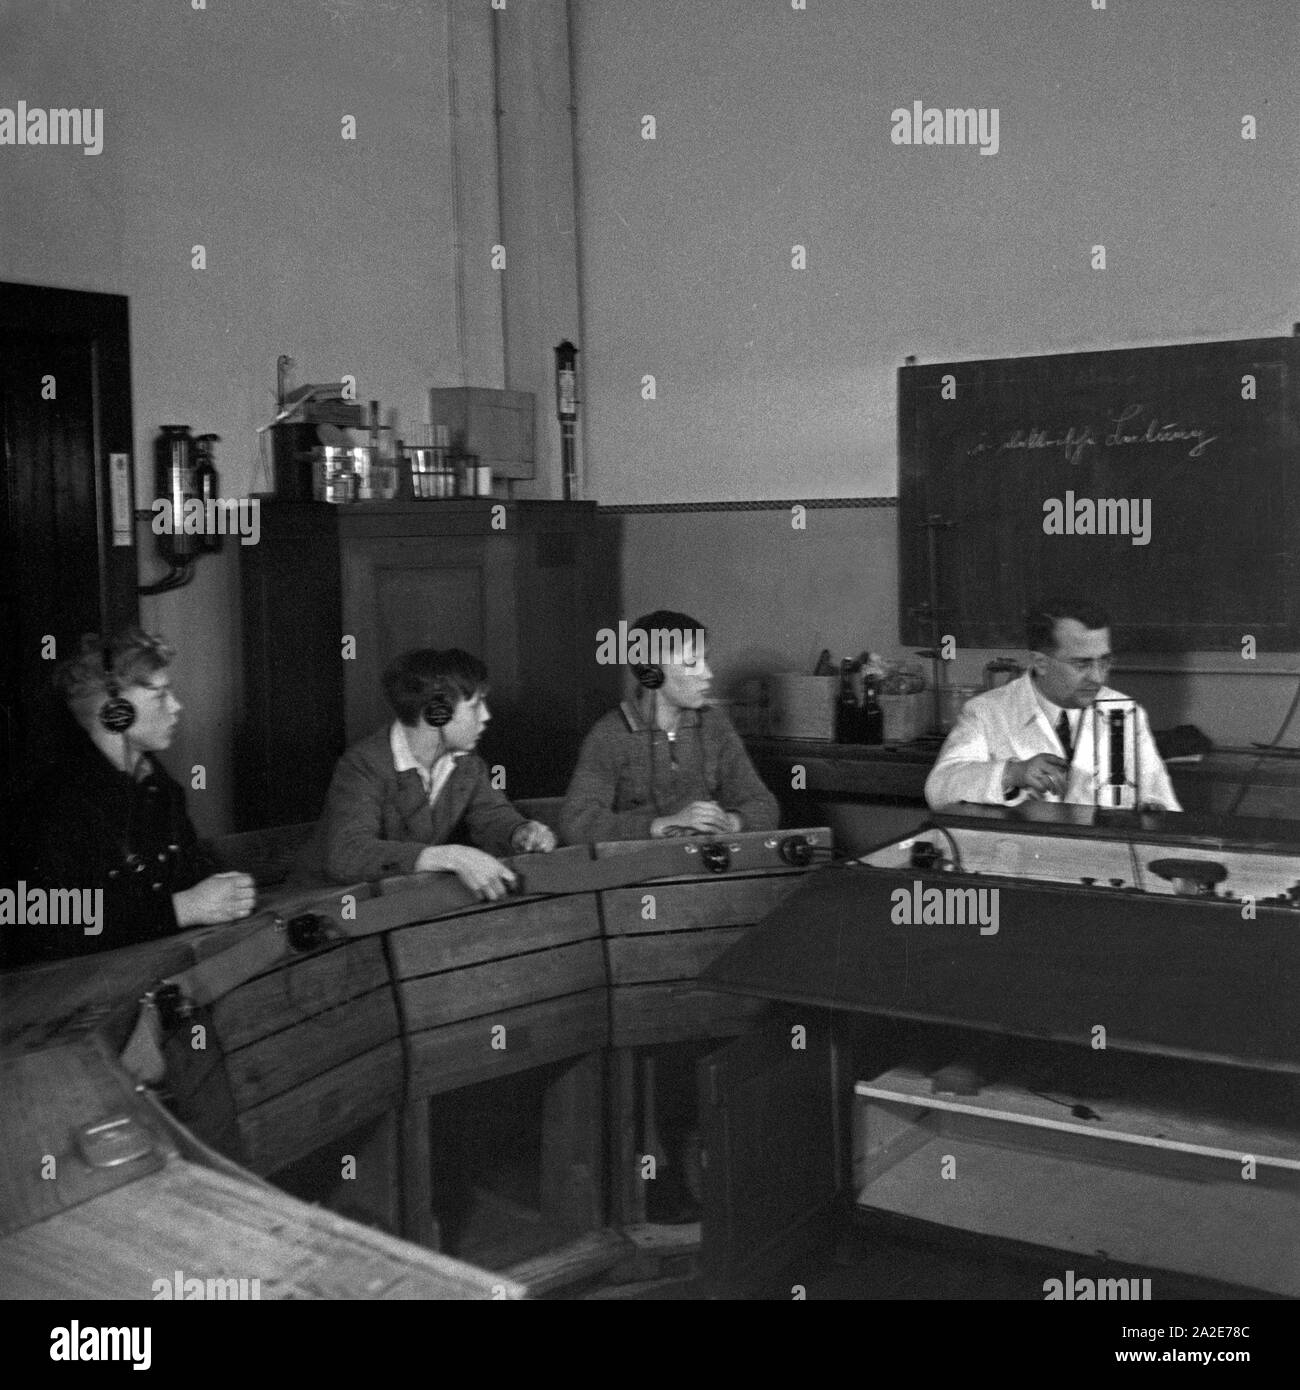 Jugendliche beim Unterricht im Sprachlabor in einer Taubstummenschule, Deutschland 1930er Jahre. Ragazzi a una lezione presso una scuola per il sordomuto, Germania 1930s. Foto Stock